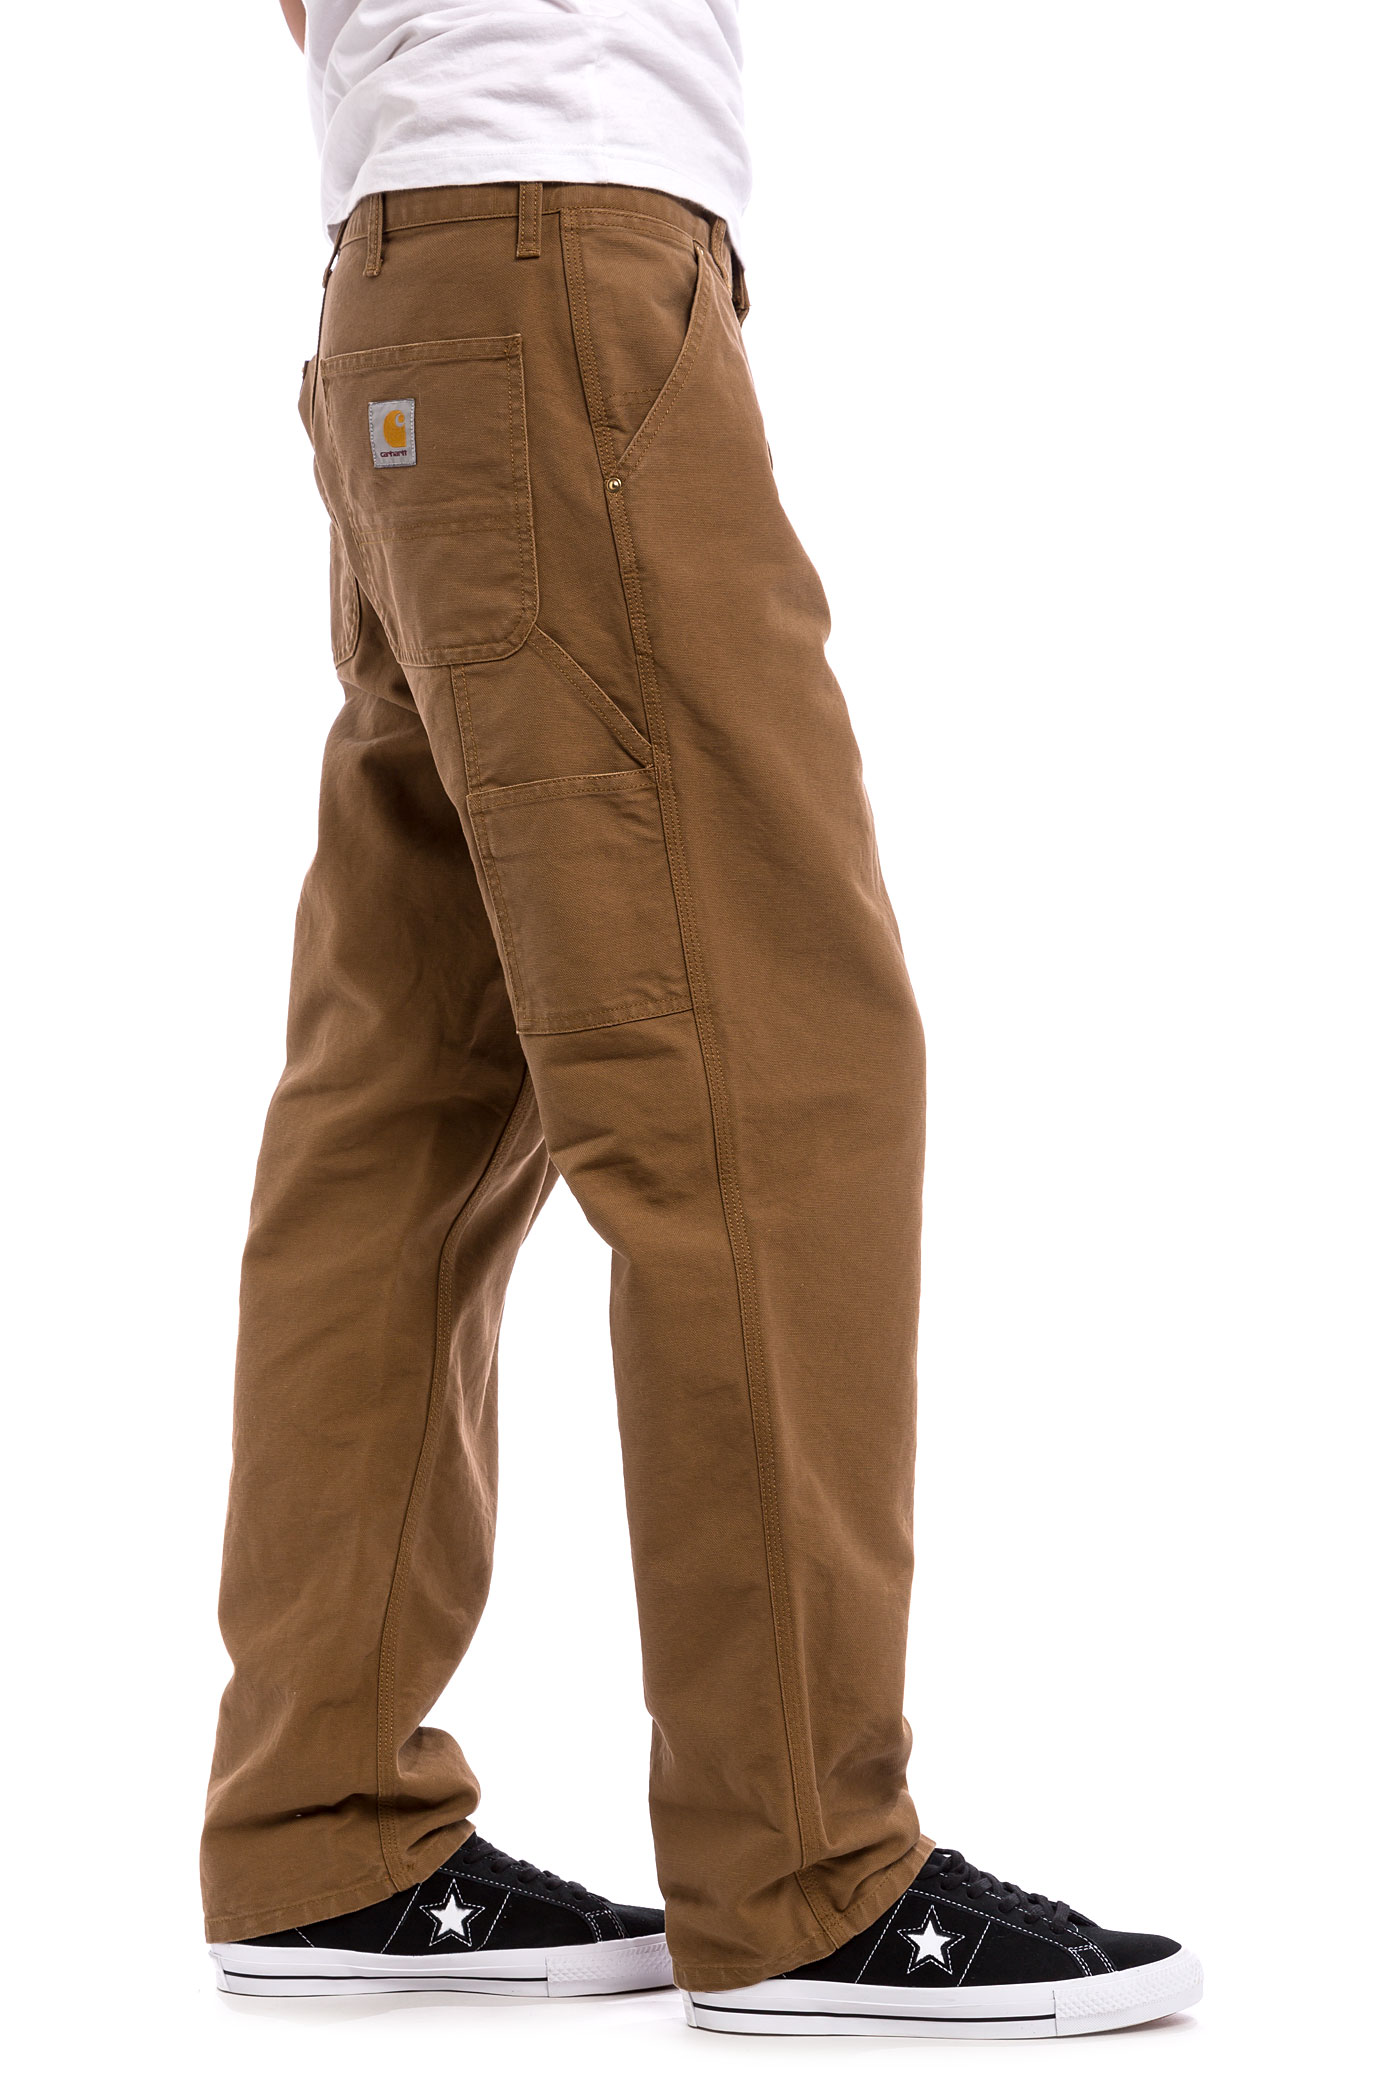 Carhartt WIP Single Knee Pant Turner Pants (hamilton brown rinsed) buy at skatedeluxe